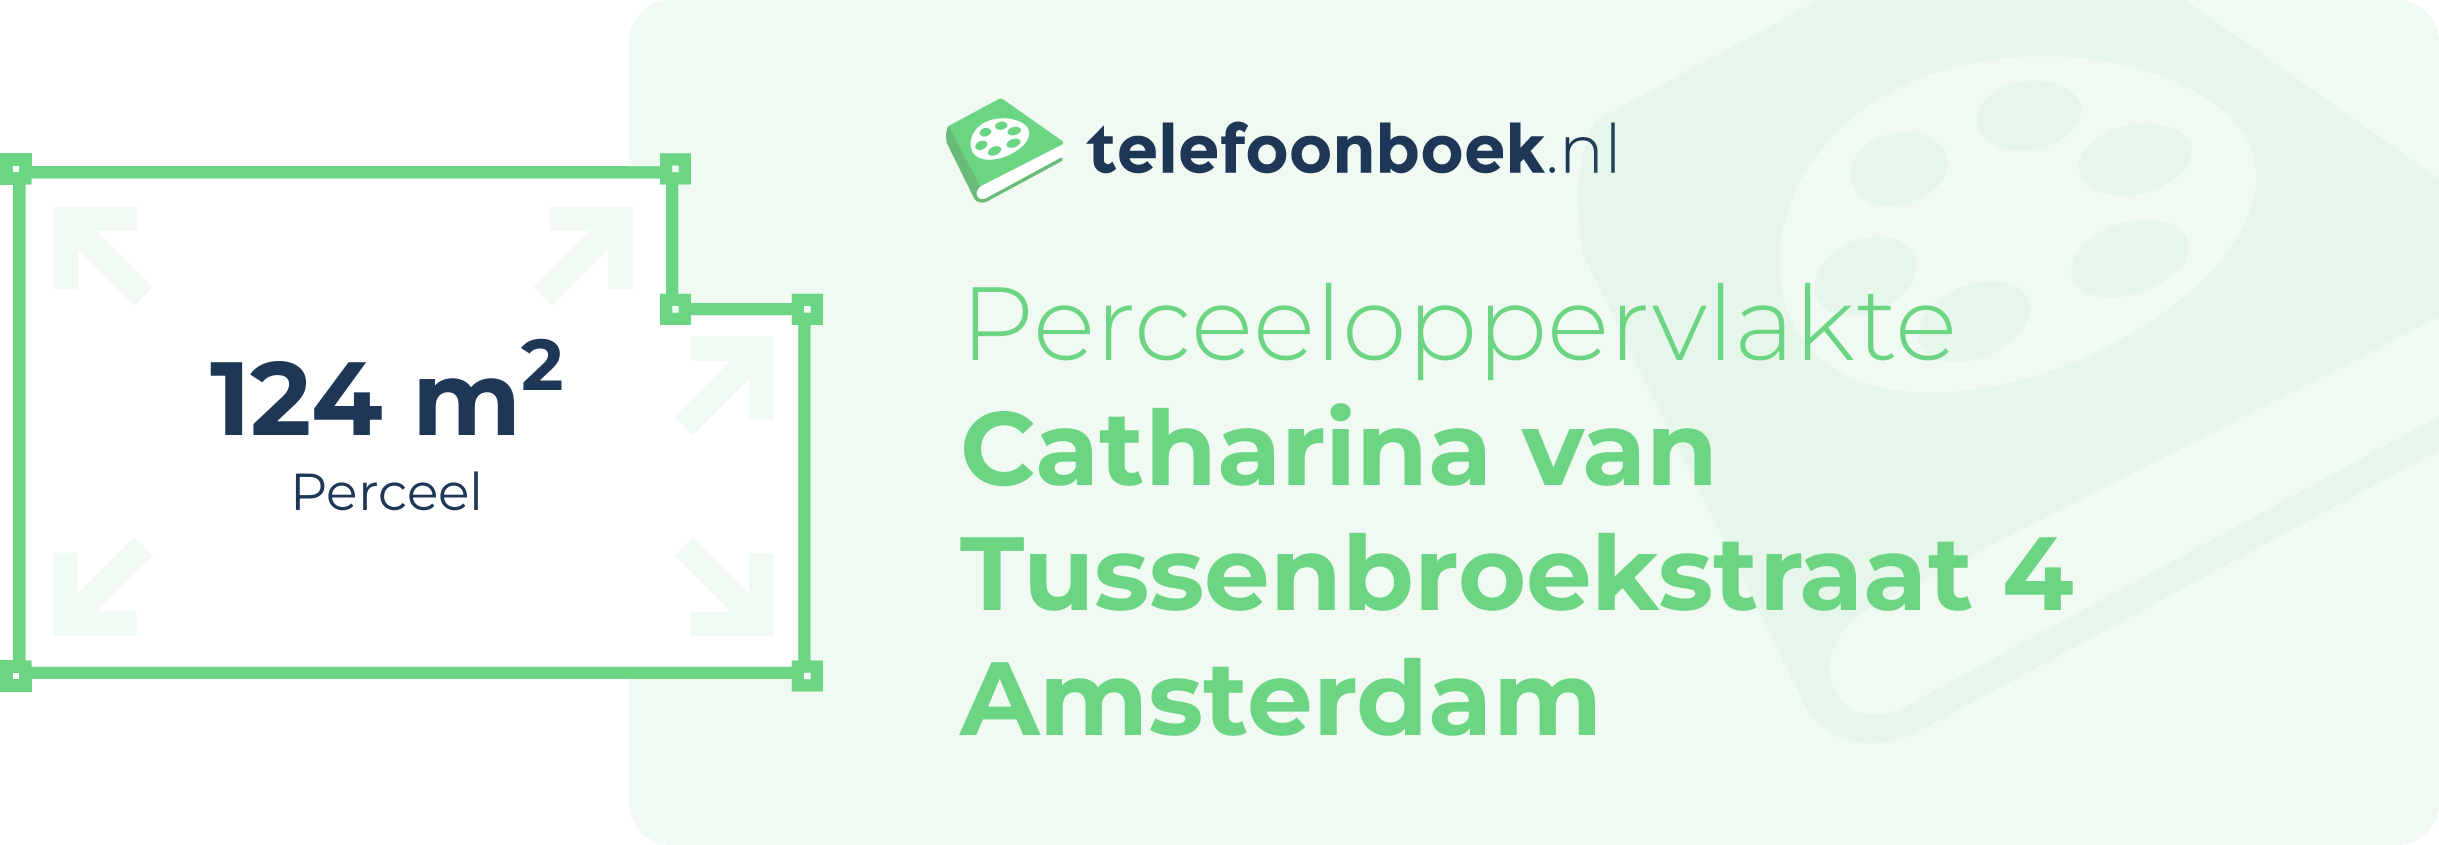 Perceeloppervlakte Catharina Van Tussenbroekstraat 4 Amsterdam